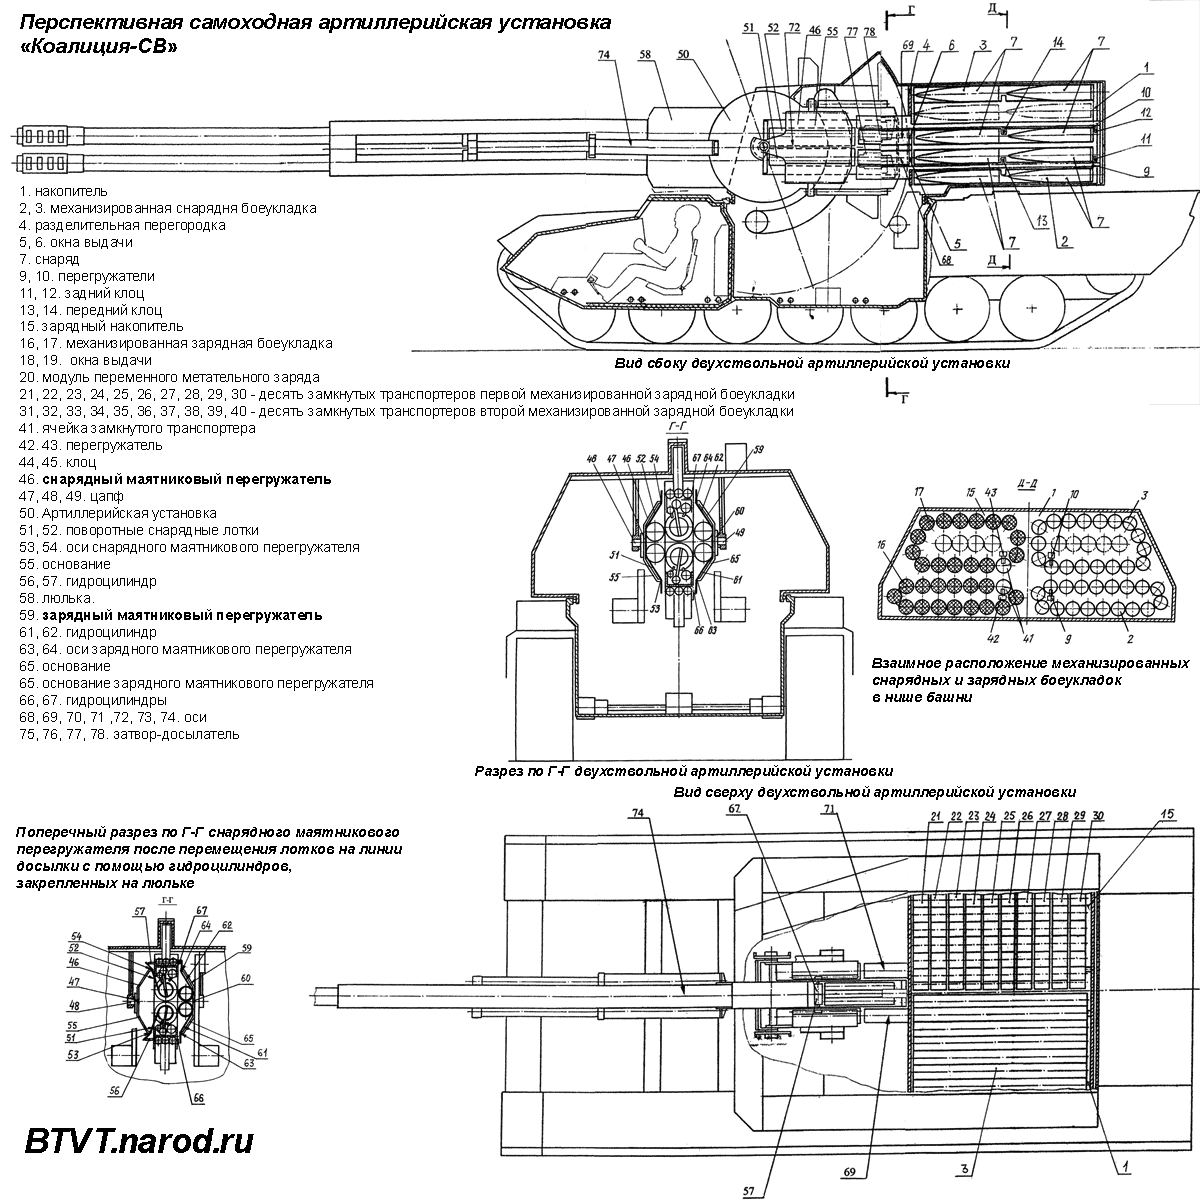 俄罗斯2s35自行火炮火力世界第一弹药全自动装填